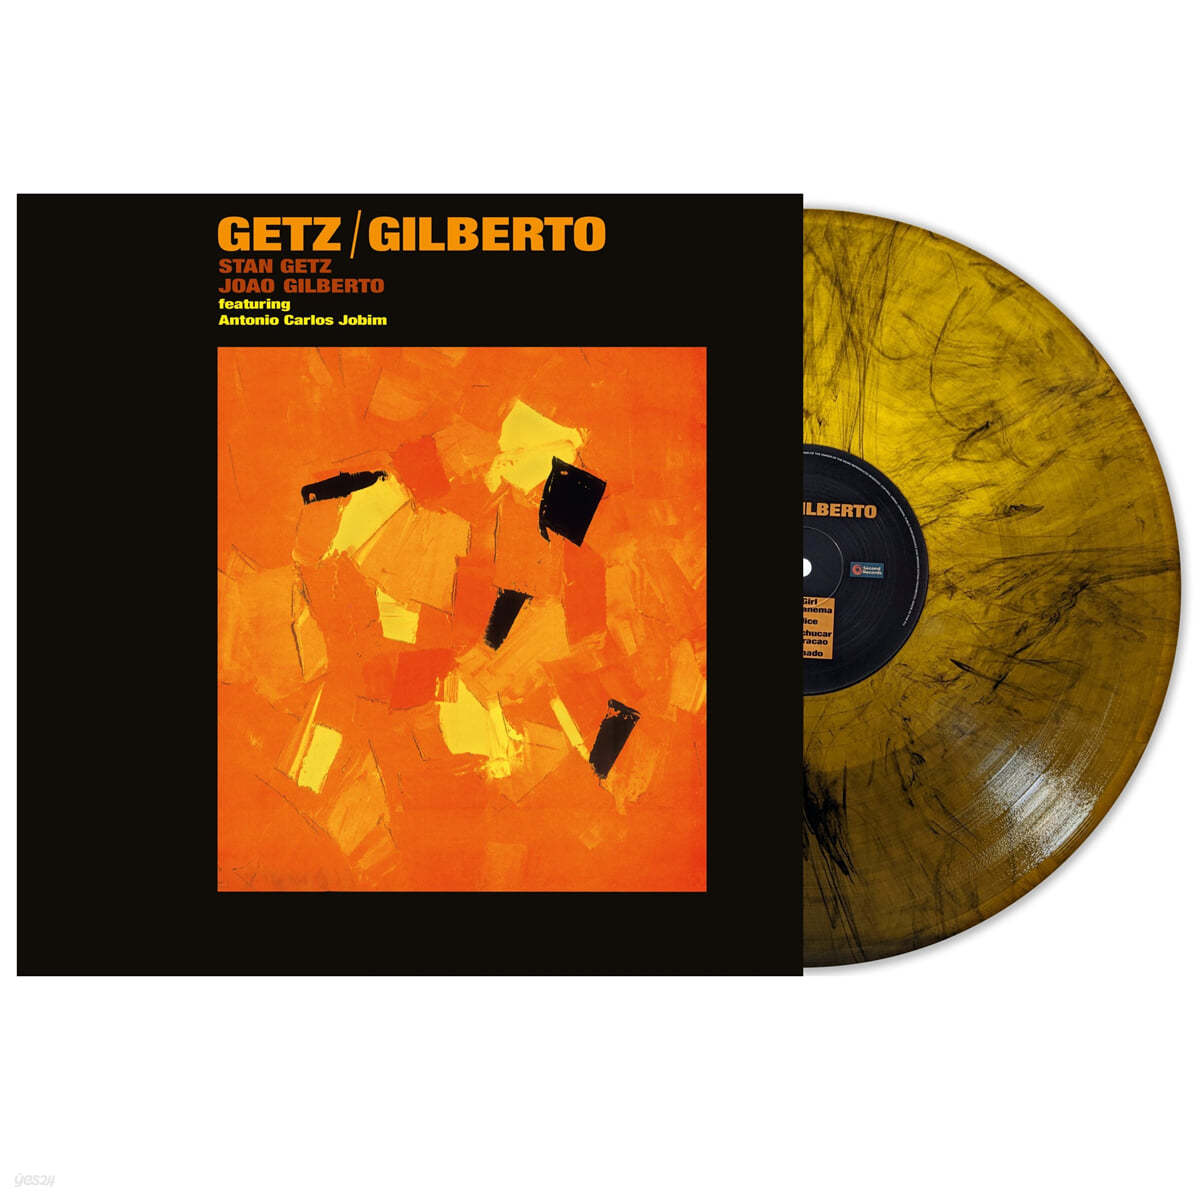 Stan Getz / Joao Gilberto (스탄 게츠 / 주앙 질베르토) - Getz / Gilberto [오렌지 마블 컬러 LP]